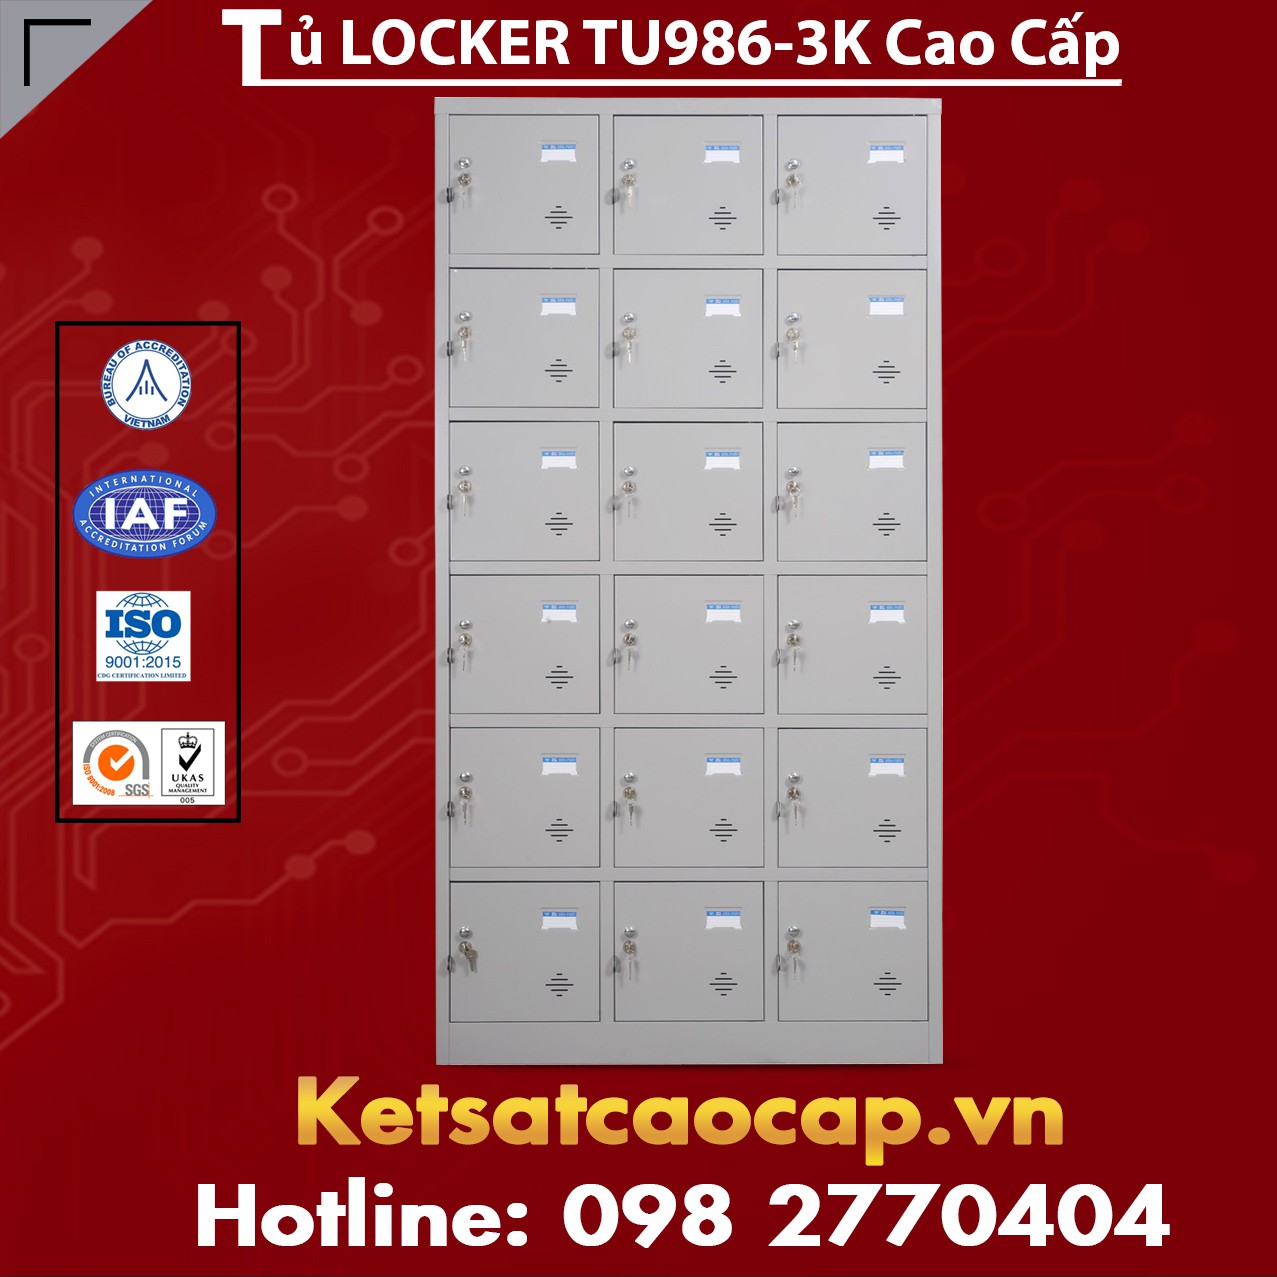 Tủ Locker TU986-3K